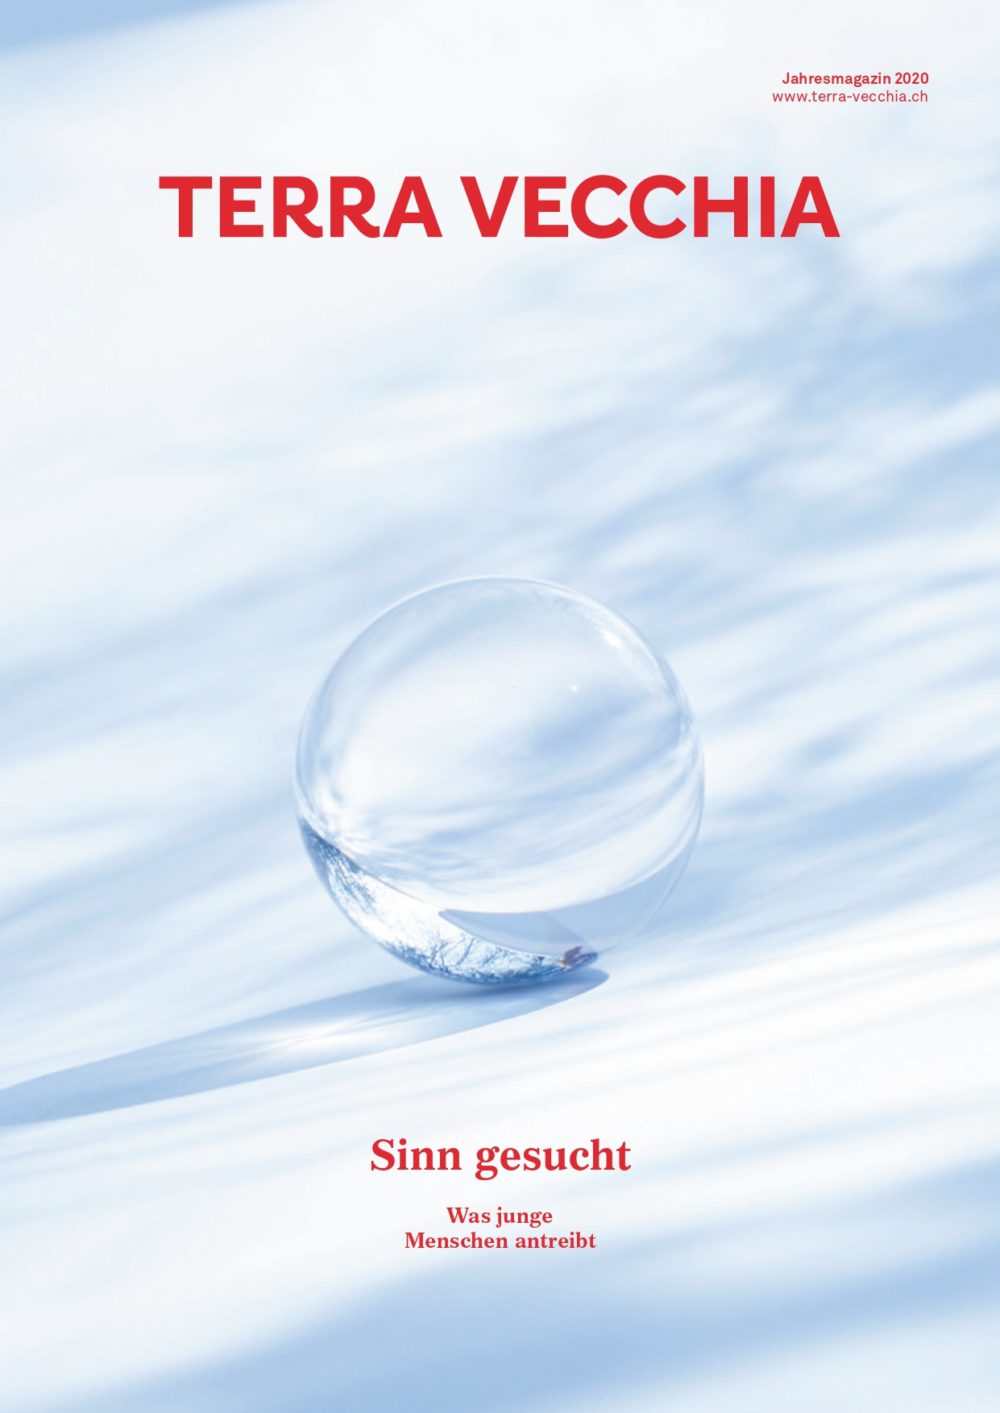 Terra Vecchia Jahresmagazin 2020 1 page 0001